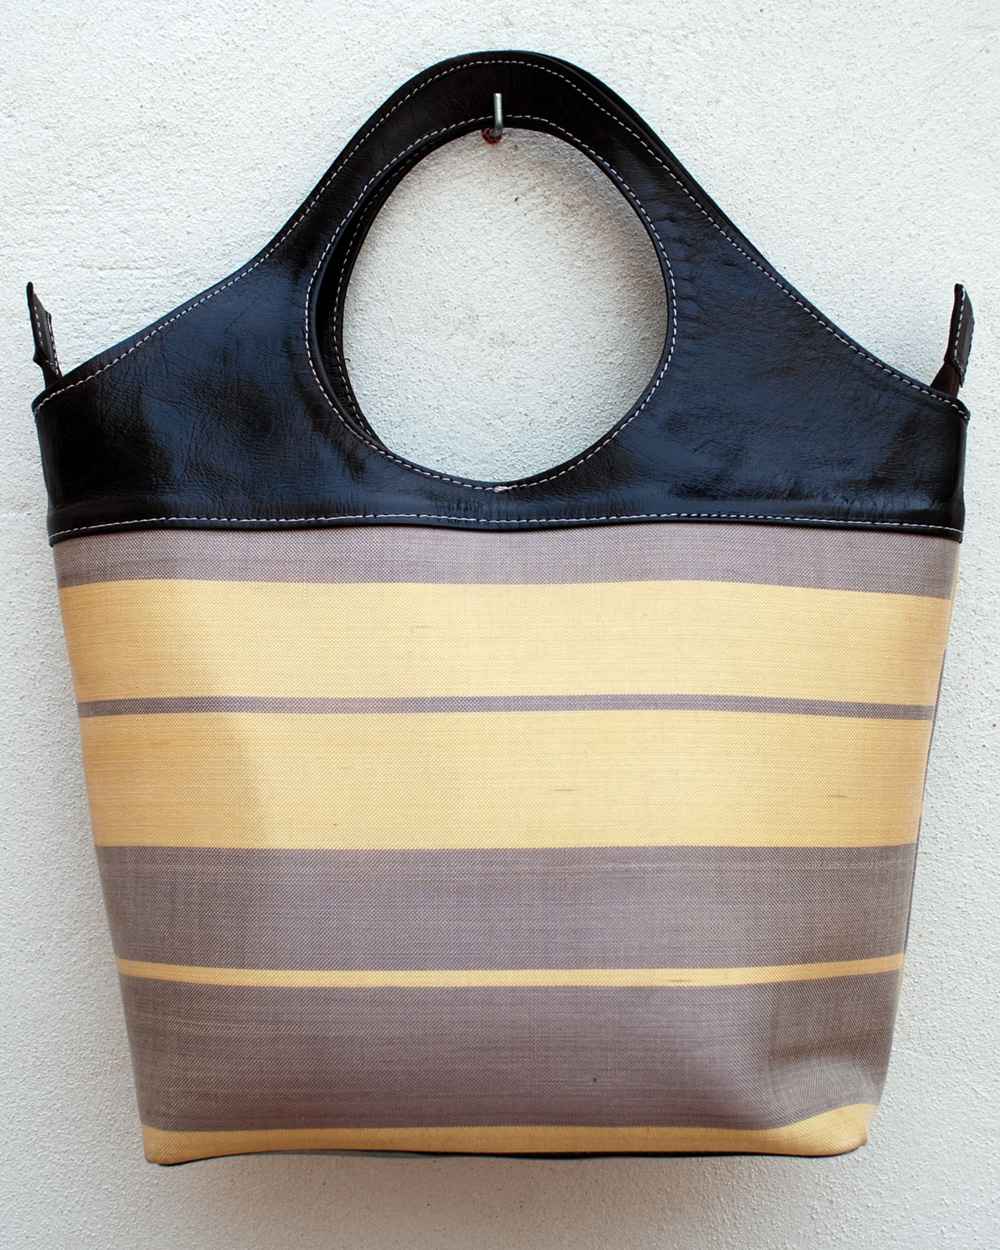 Grand sac tote pour femmes en vrai cuir noir et tissue à rayures de jaune pâle et gris